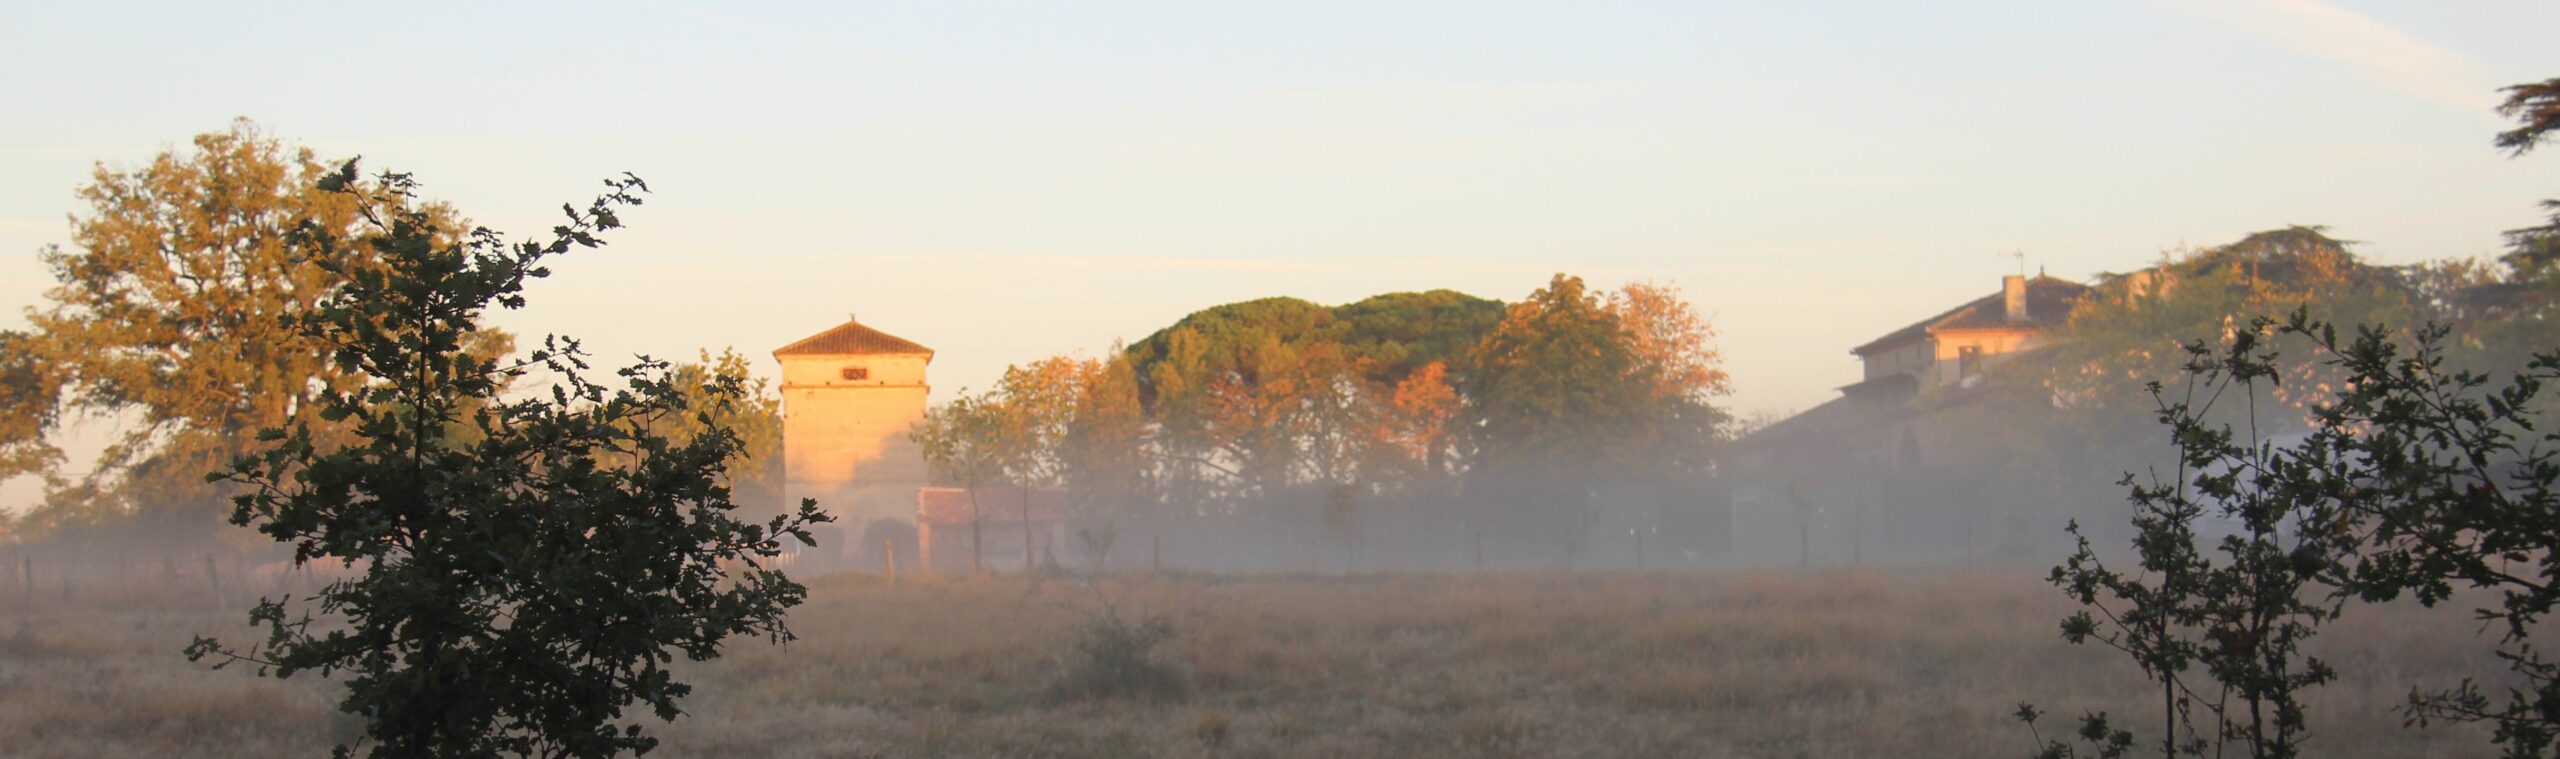 propriété dans brouillard matinal